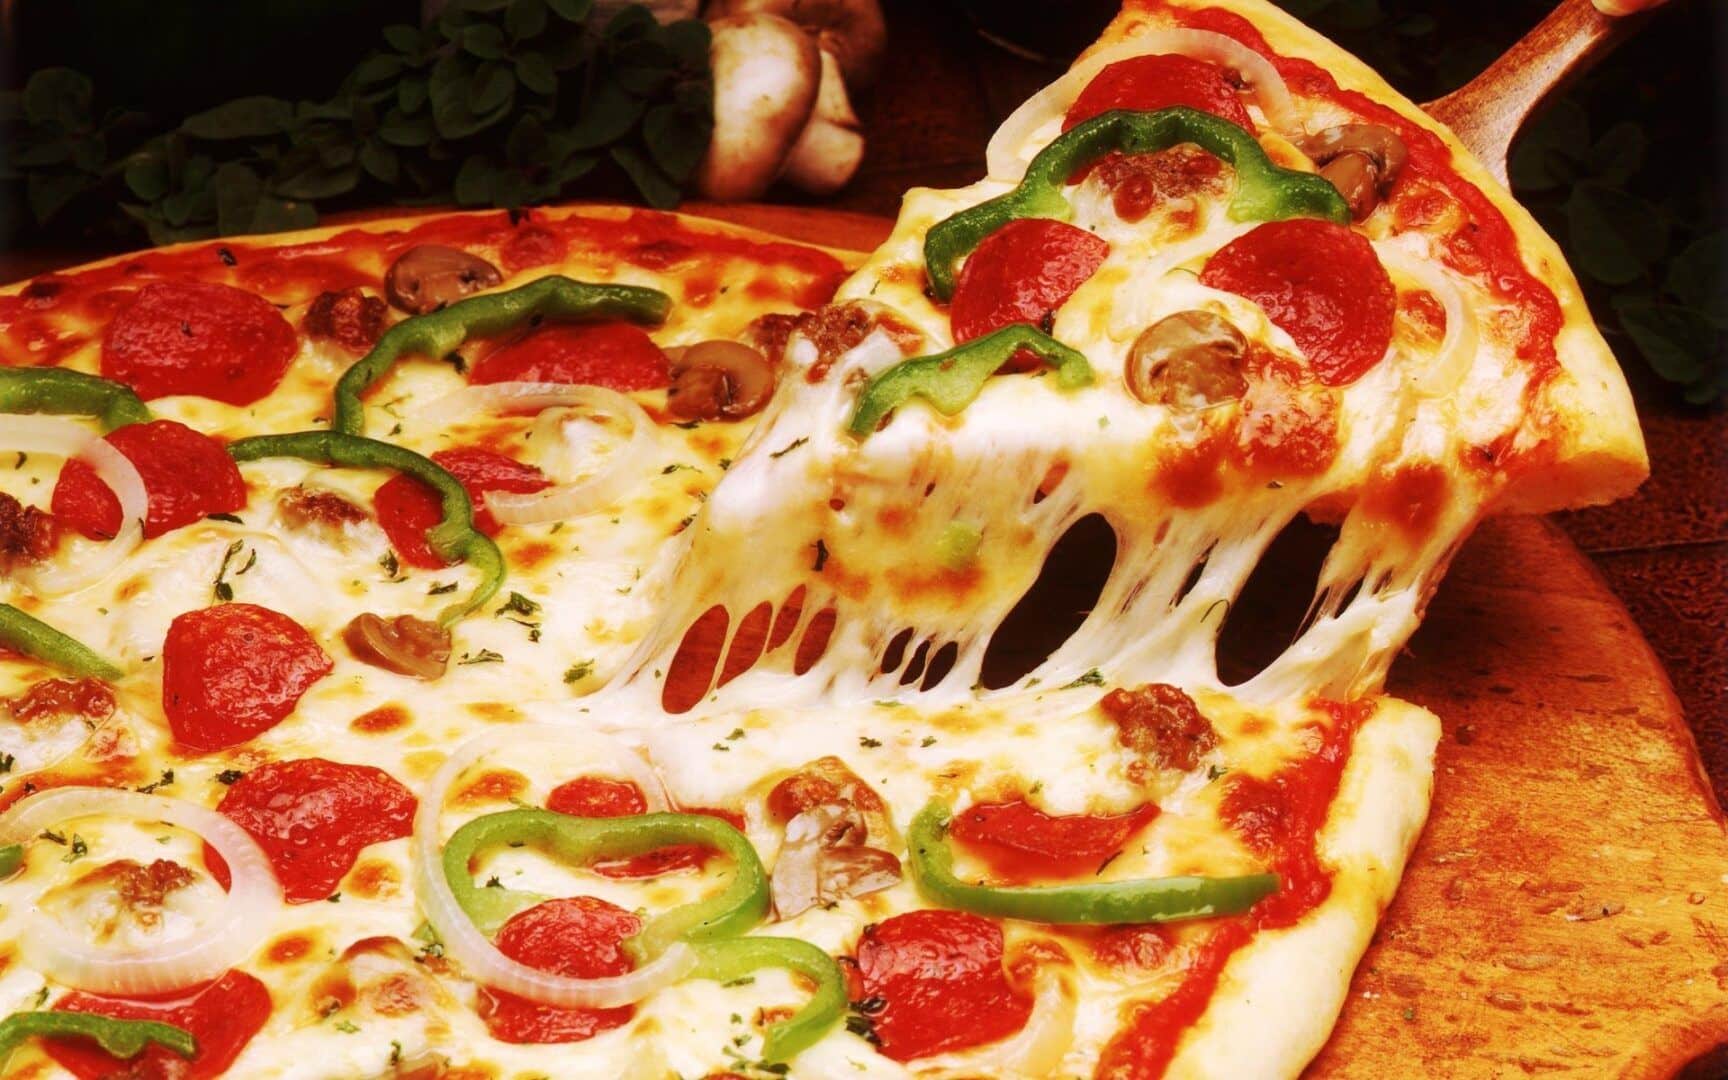 Apresentamos a Pizza Siciliana, uma explosão de sabores no cardápio  Brasiliana 🍕💚💛 O molho de tomate especial é a base perfeita para…